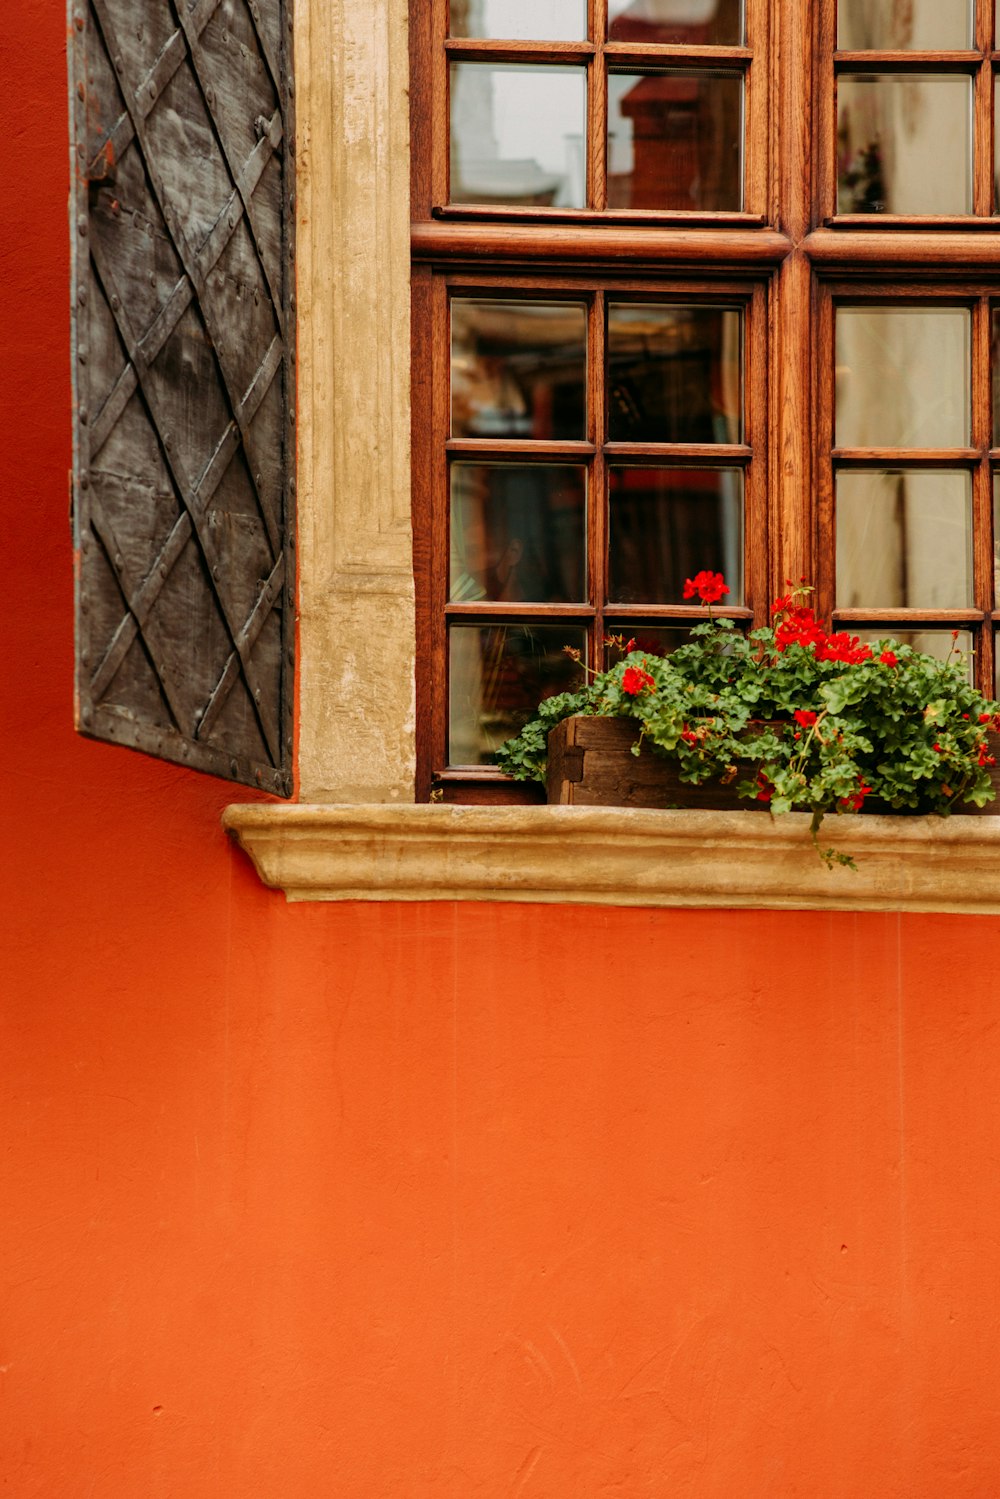 Flores rojas en la ventana durante el día